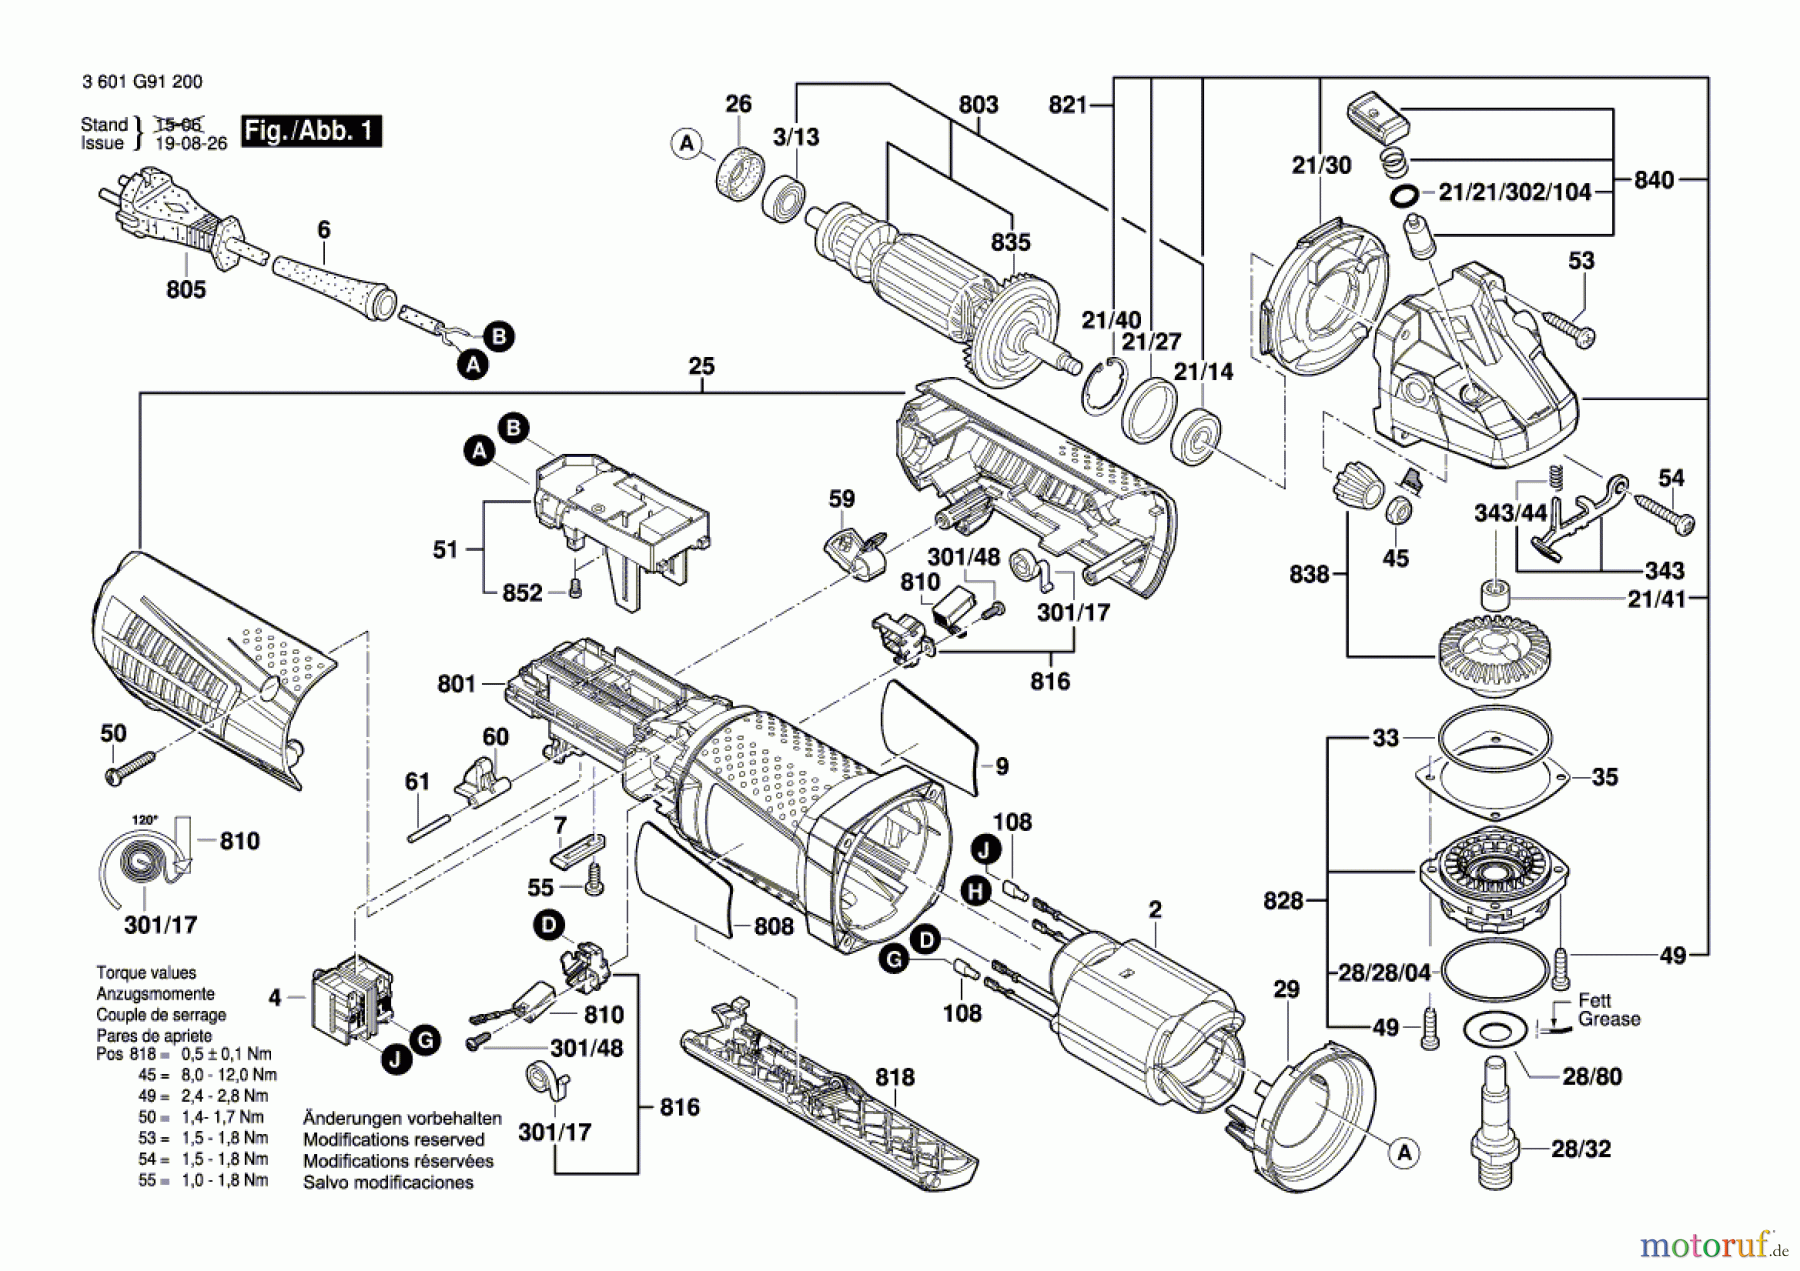  Bosch Werkzeug Winkelschleifer GWS 9-125 P Seite 1